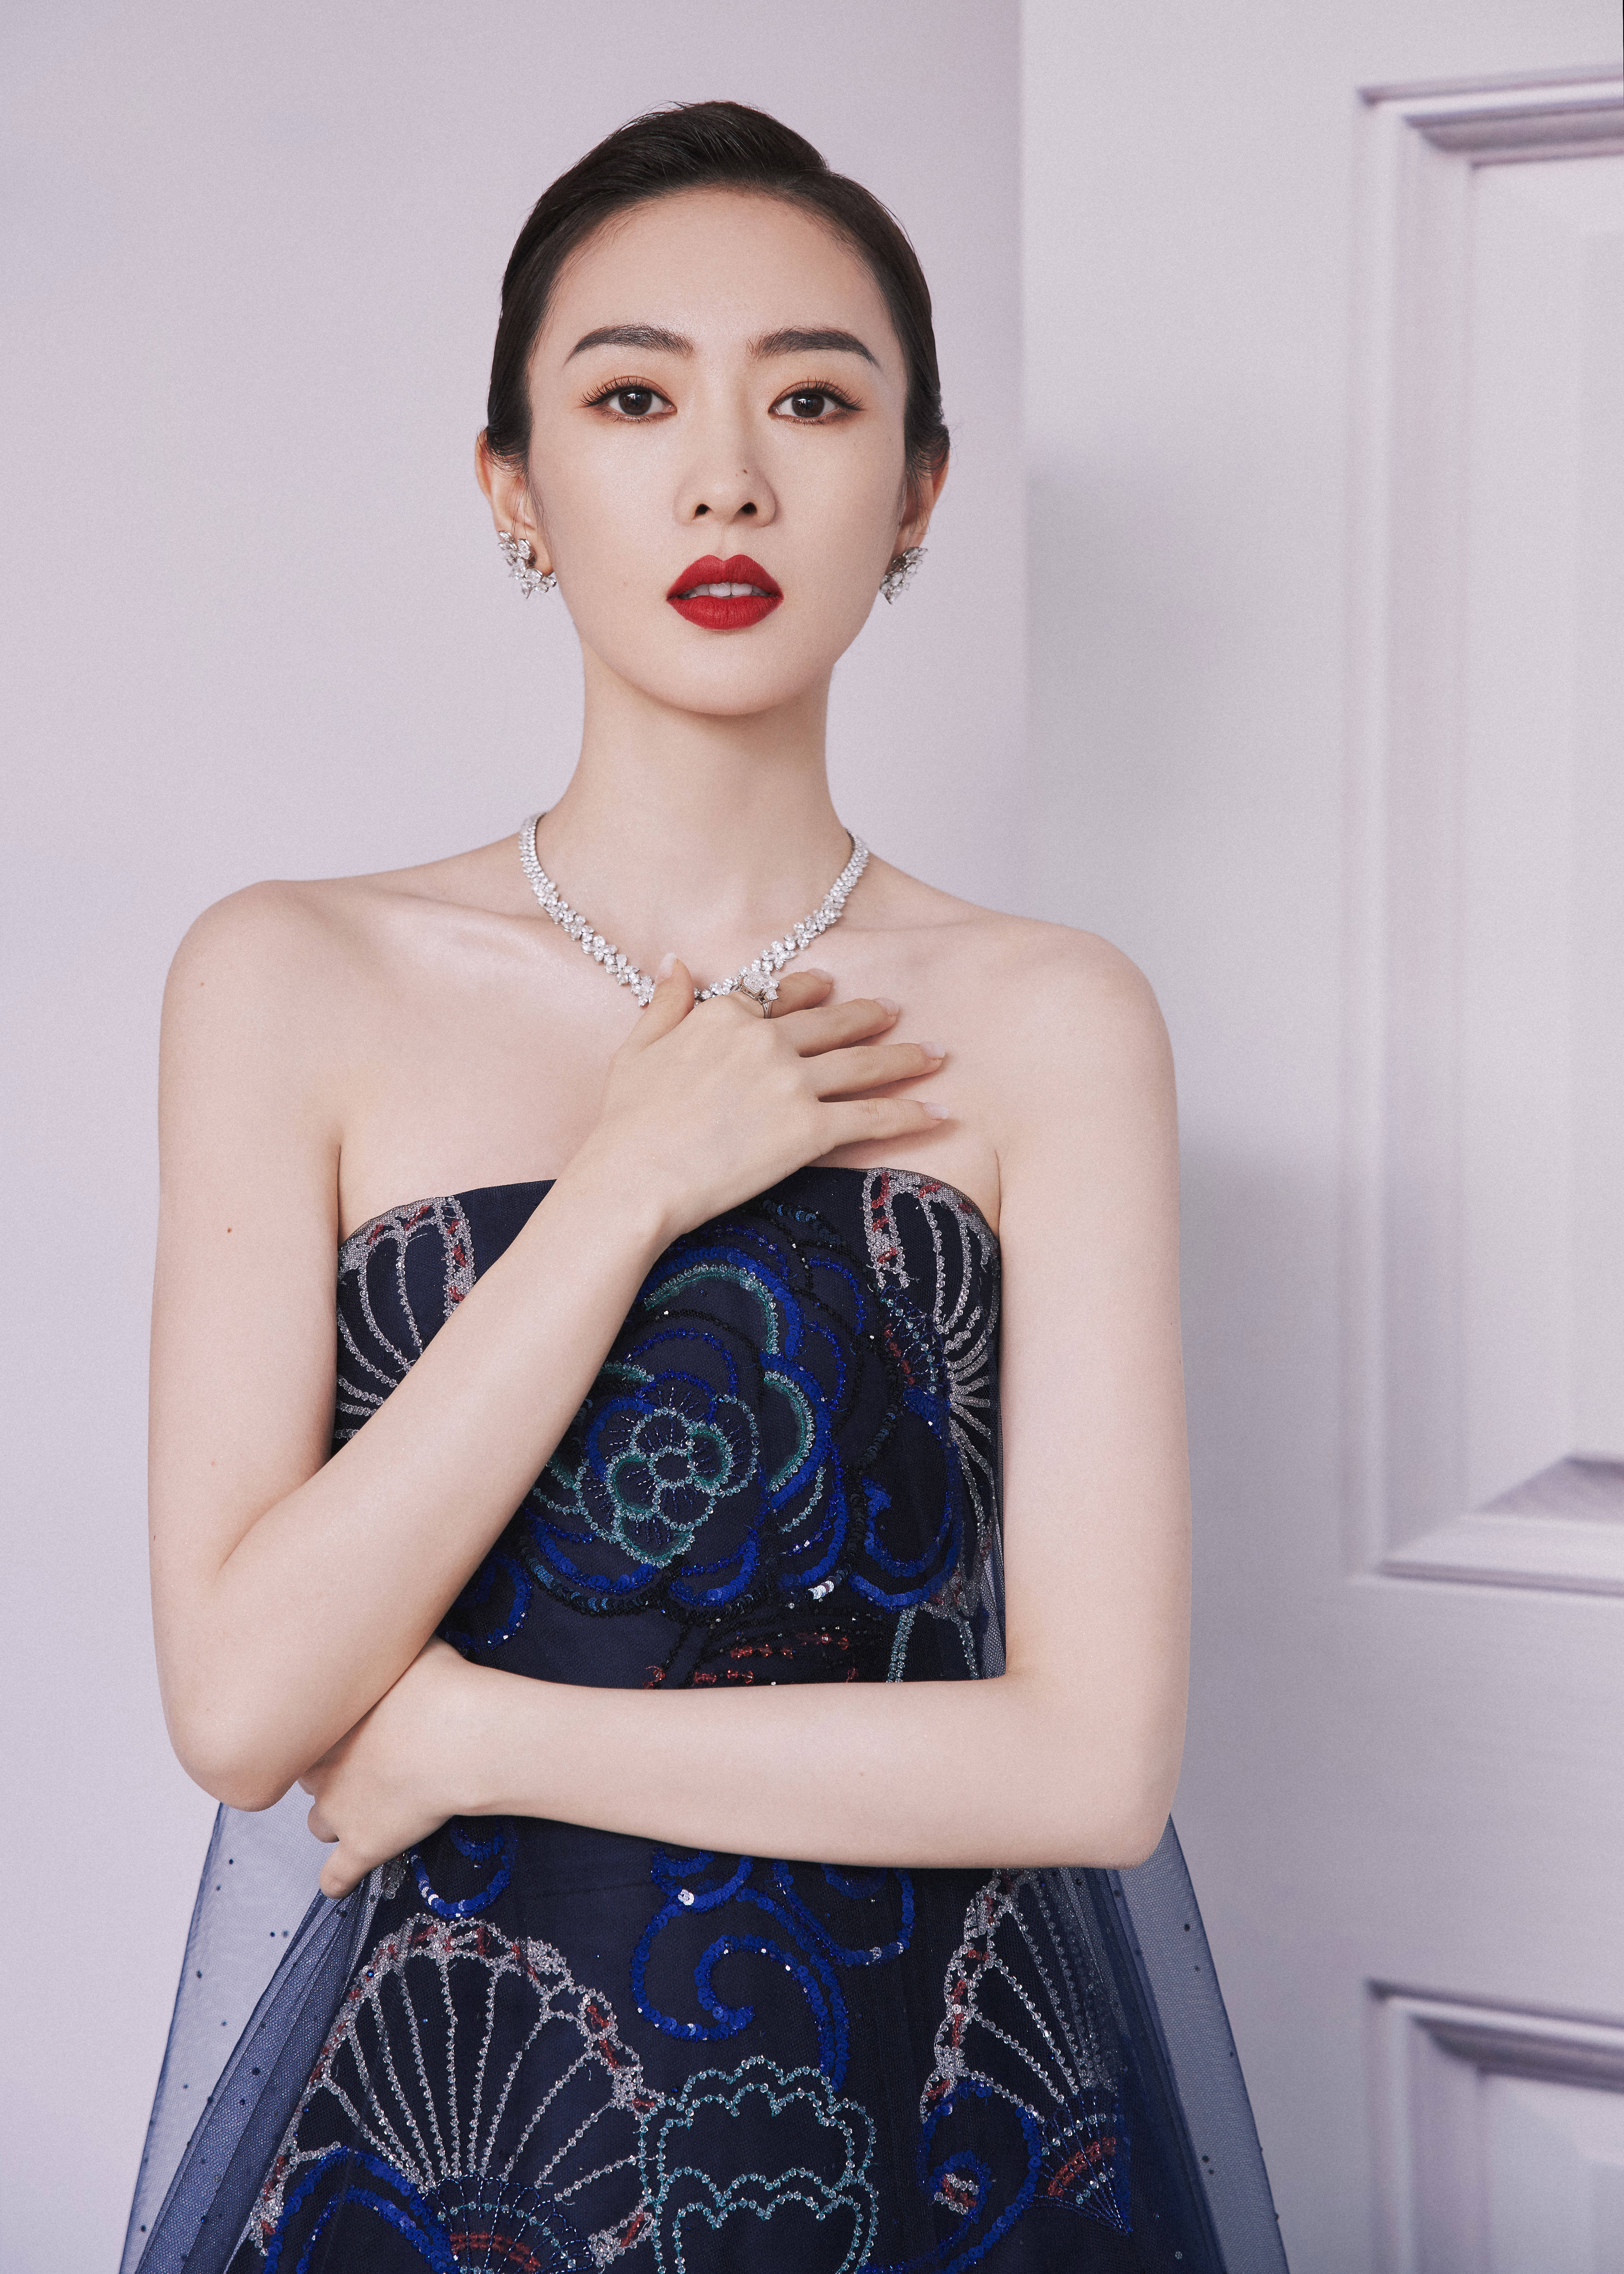 搜狐娱乐讯 6月10日,童瑶以最佳女主角提名者的身份出席第27届上海